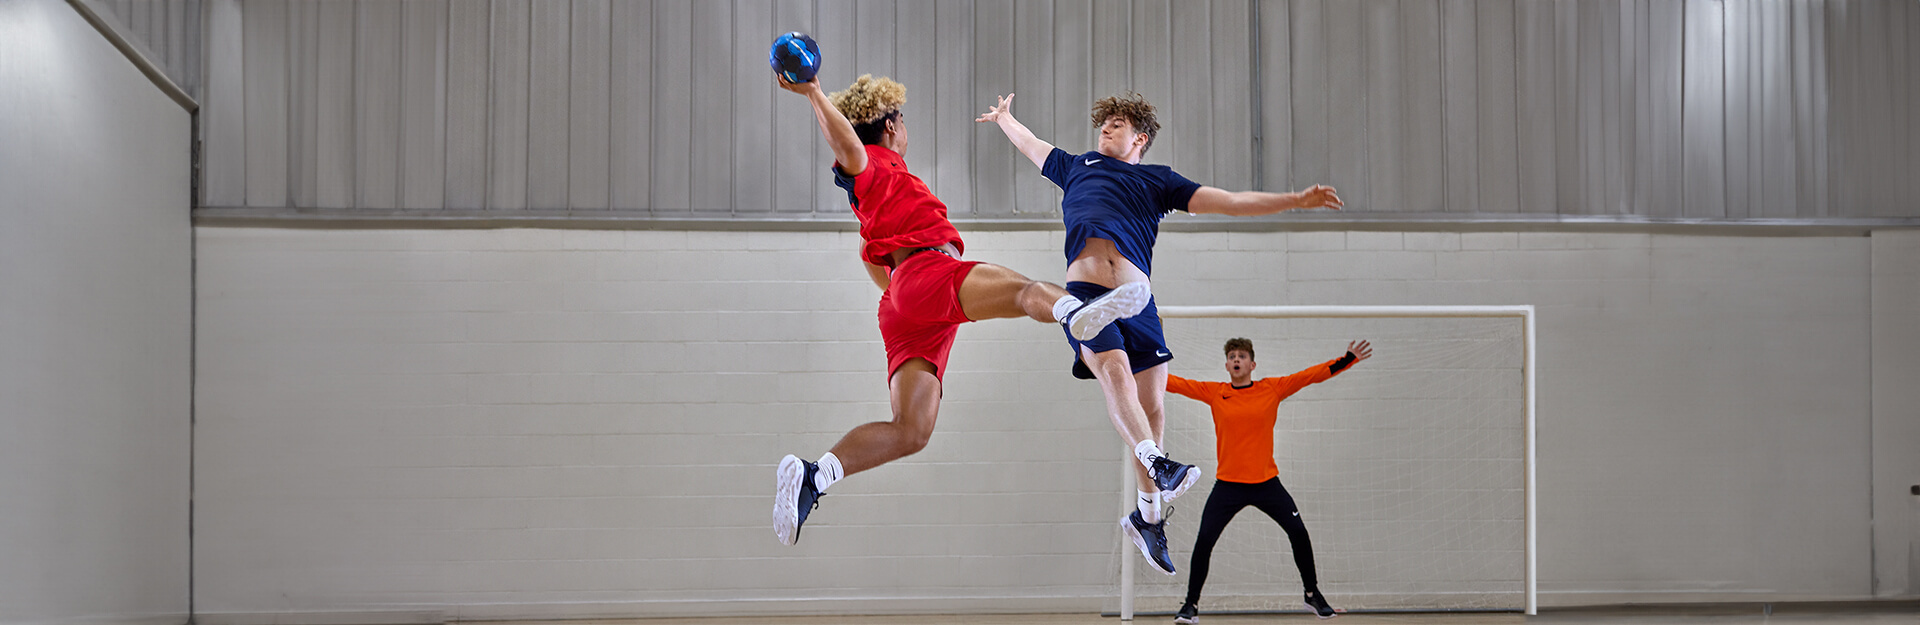 Nike-Handball-Ausrüstung und -Bekleidung für Ihren Verein